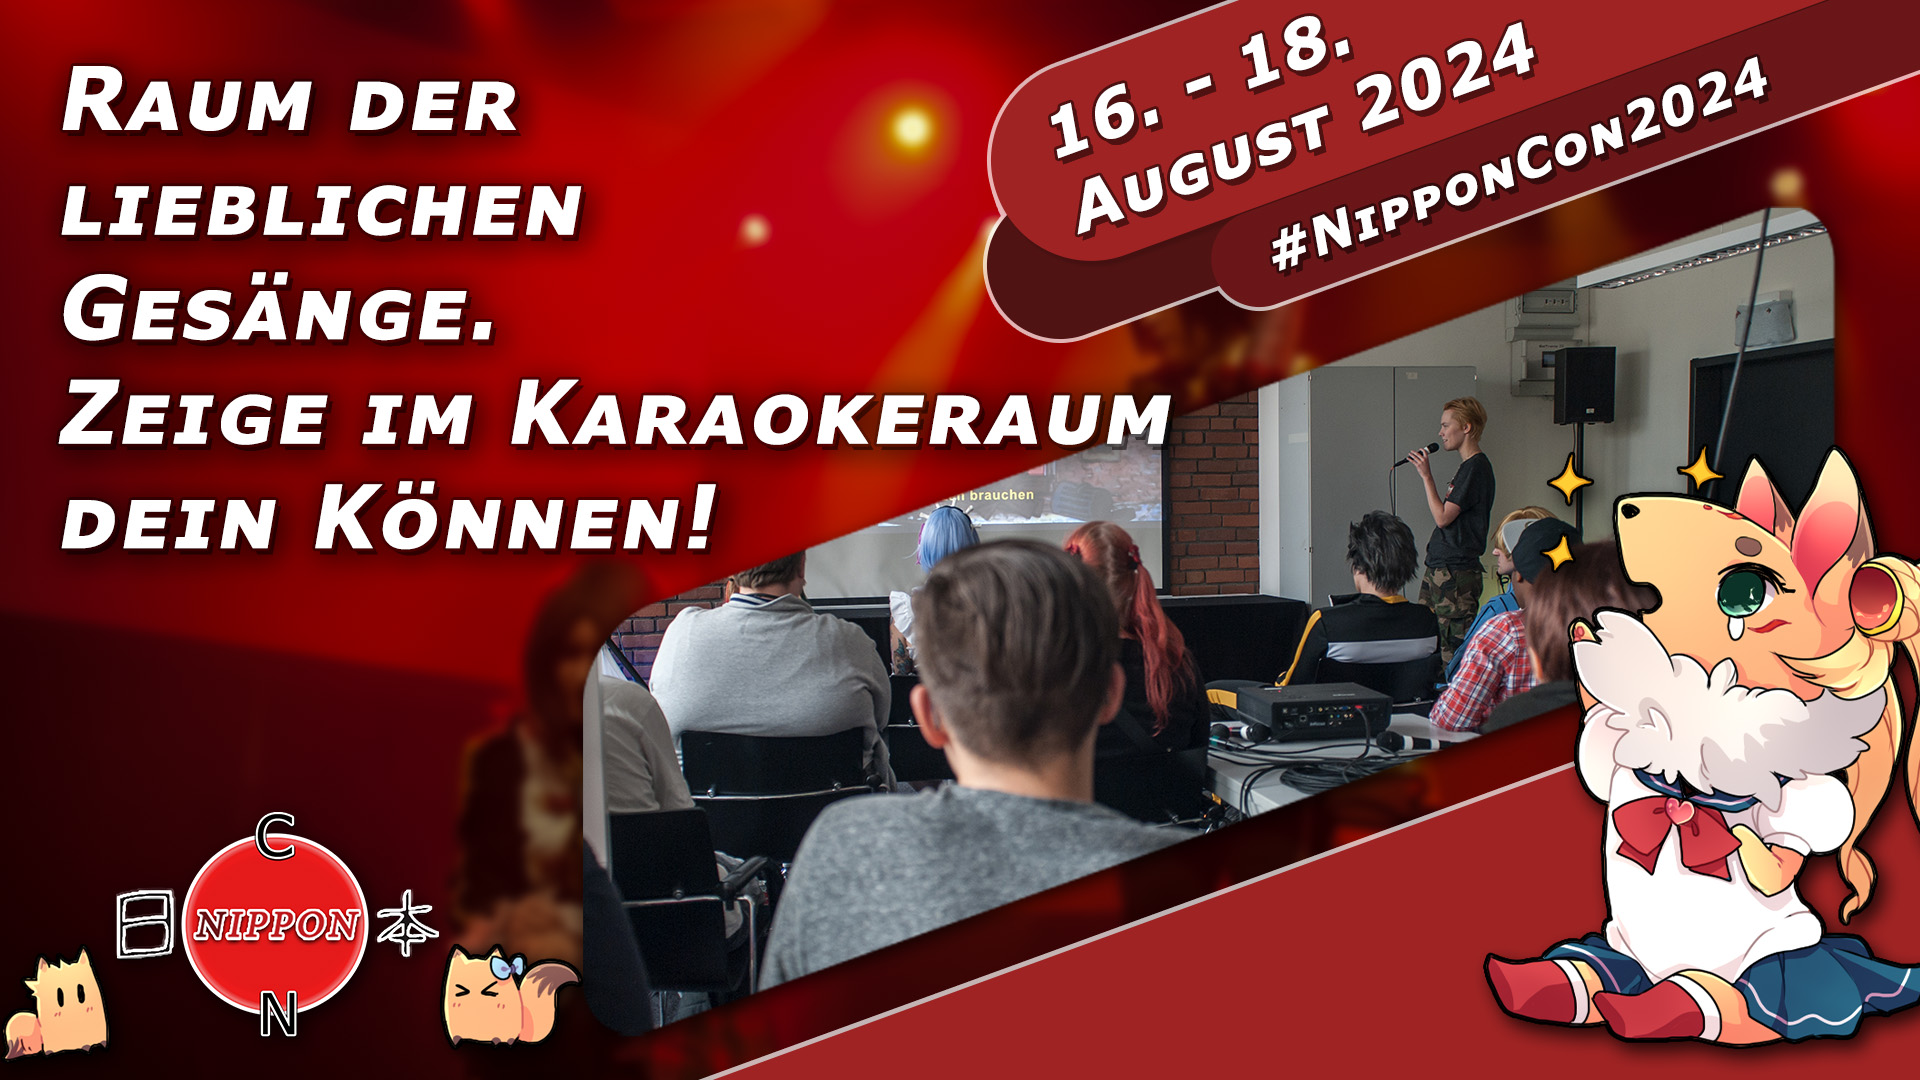 NipponCon 2024 Bremen. Vom 16. bis 18. August 2024. #NipponCon2024. Raum der lieblichen Gesänge. Zeige im Karaokeraum dein Können!